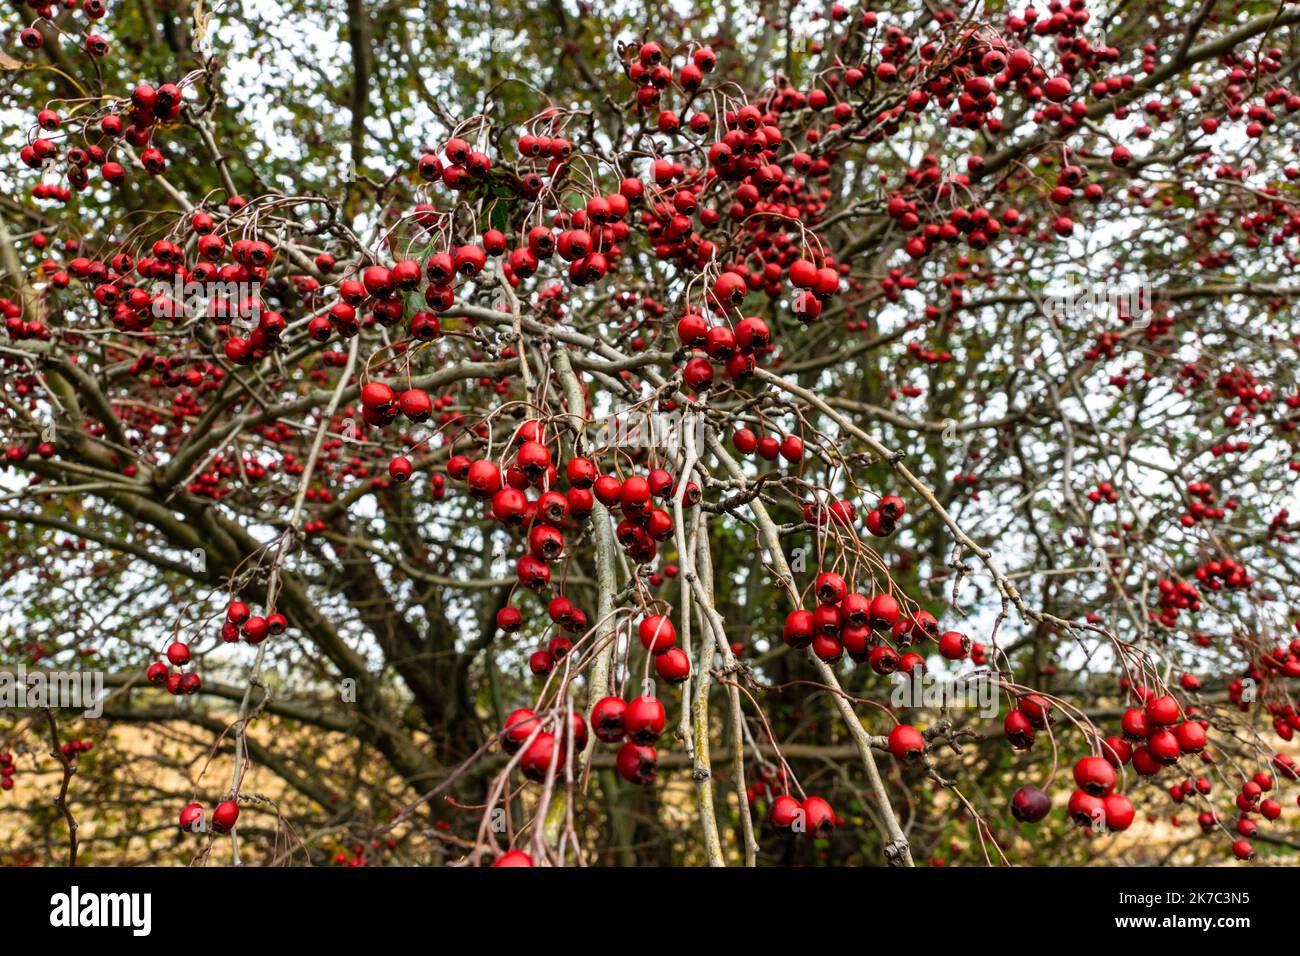 Biancospino, arbusto spinoso o albero della famiglia delle rose, con piccoli frutti rossi scuri (zampe). Nativo alle regioni temperate del nord, è usato comunemente per hed Foto Stock